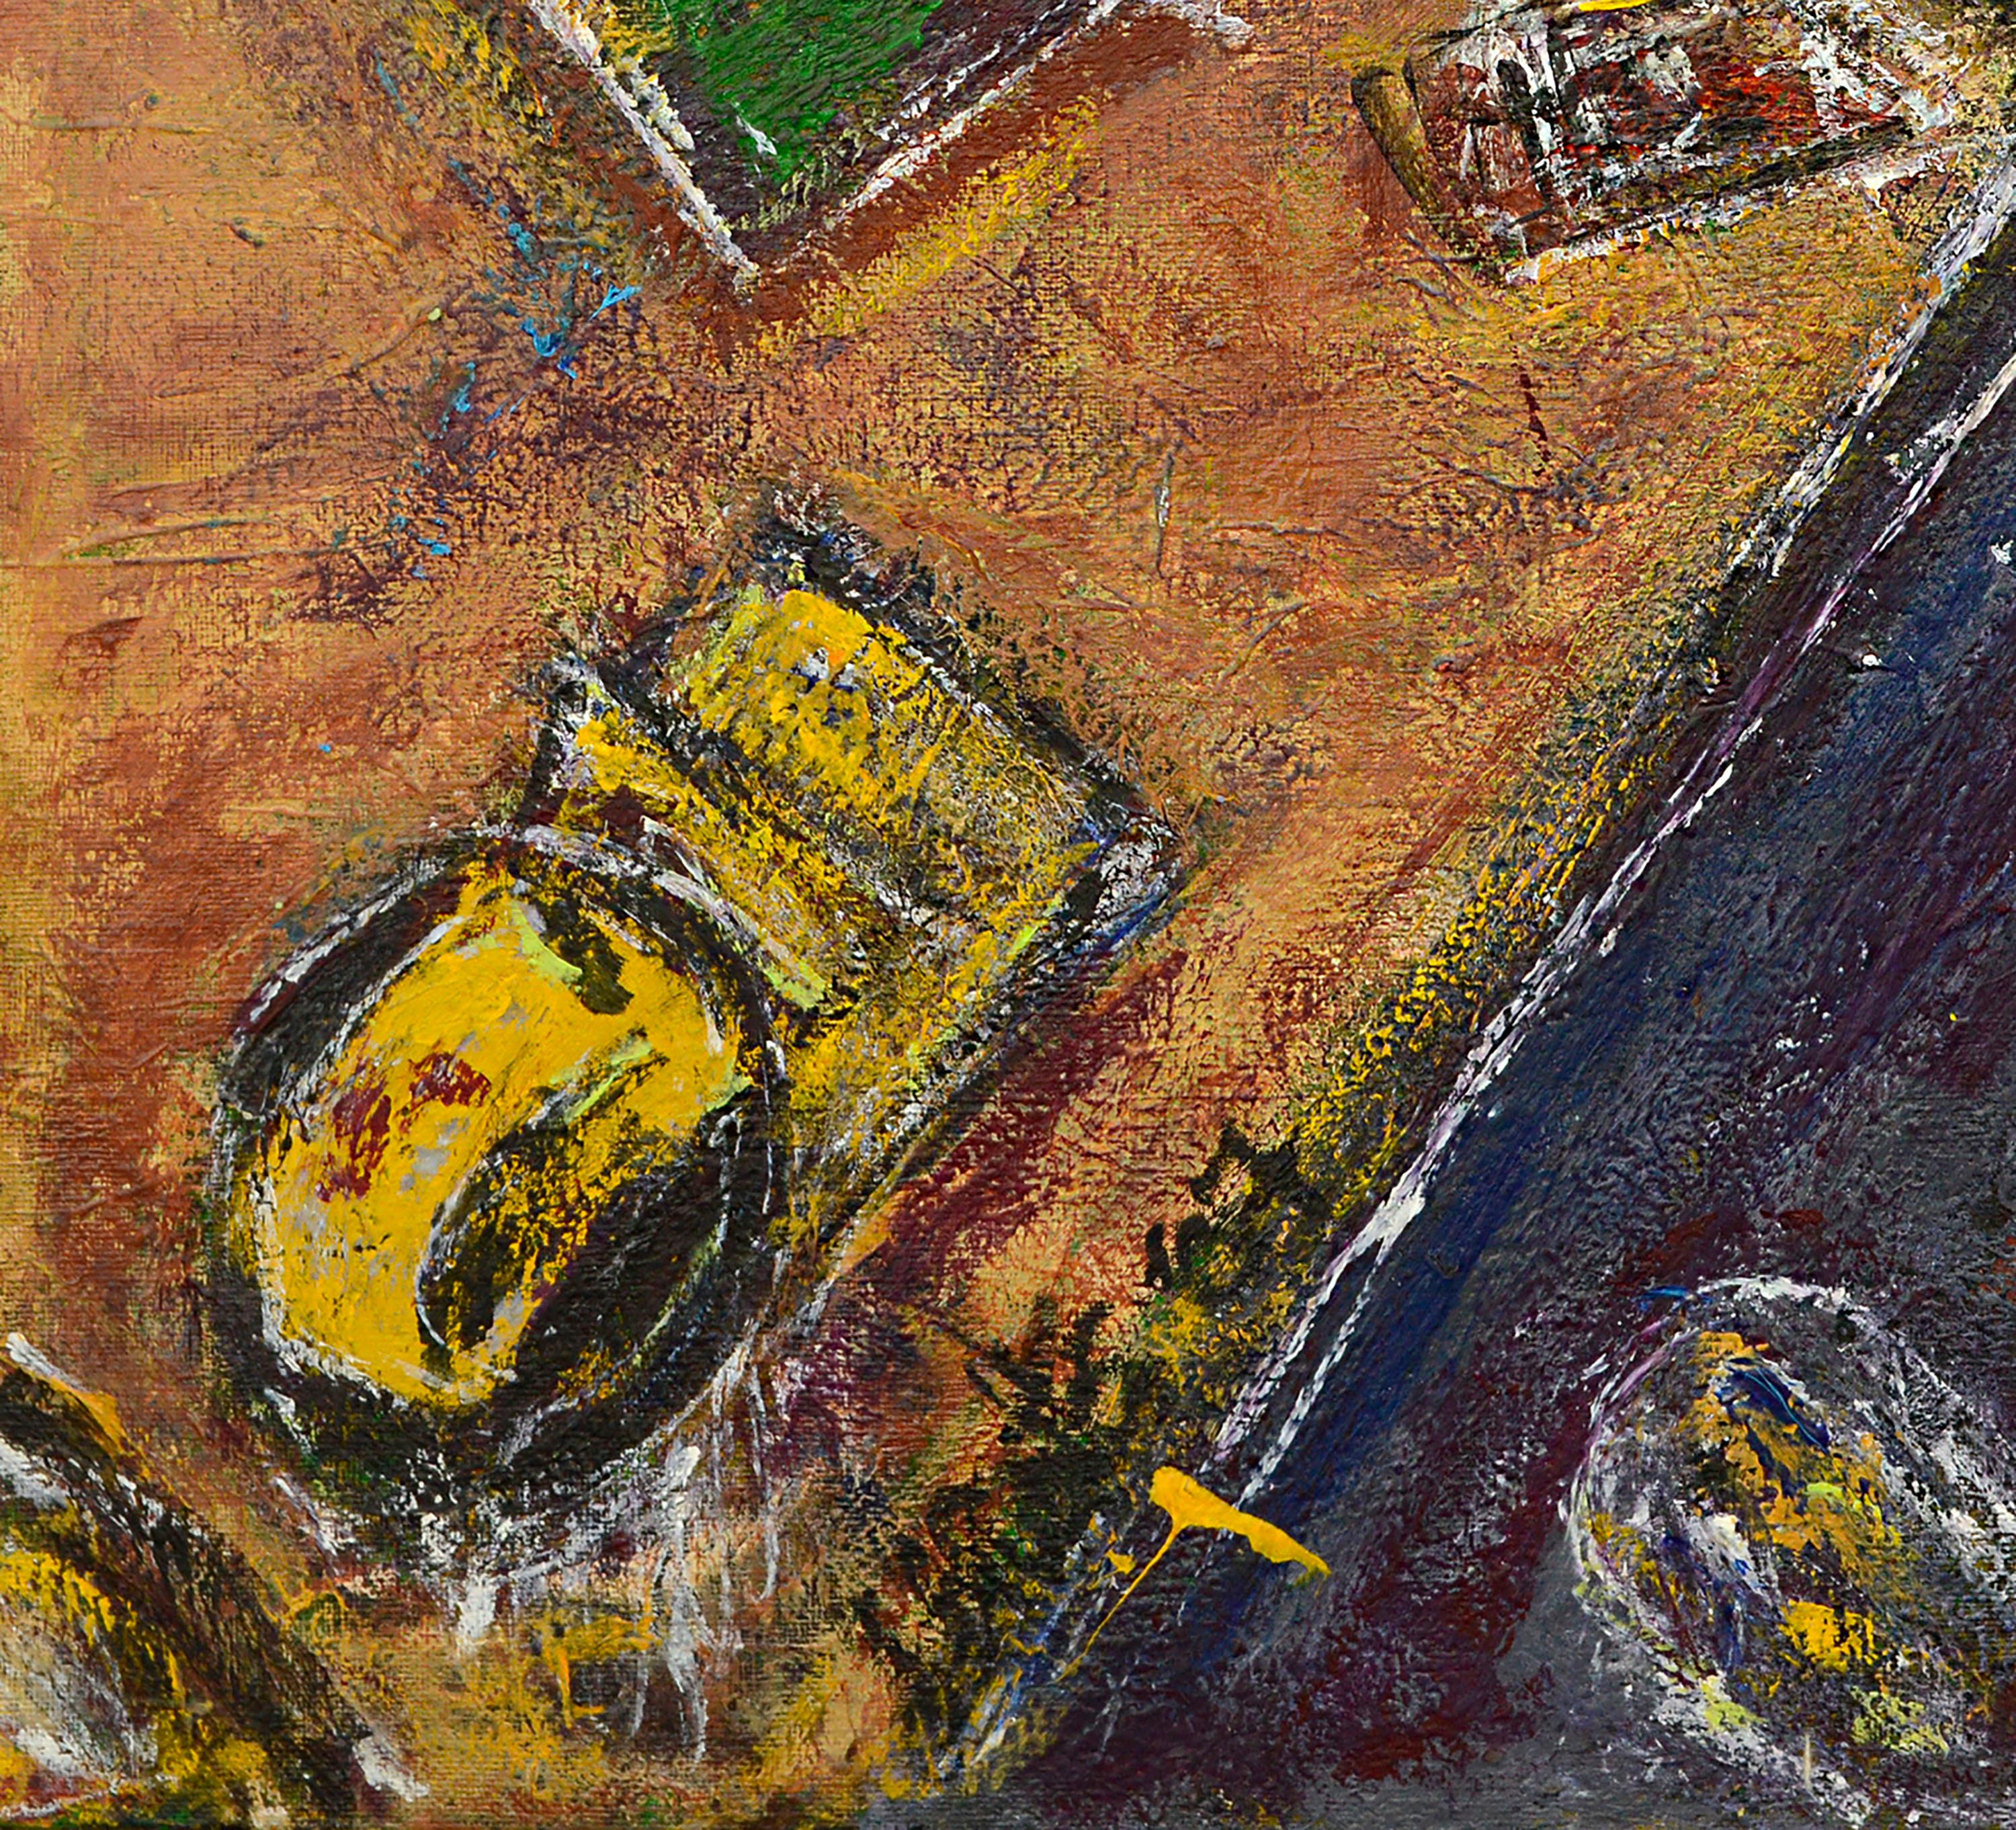 Skurriles abstrahiertes Stillleben mit drei Gänseblümchen und anderen Objekten, die in einem vieldeutigen orangefarbenen Raum schweben, von Daniel David Fuentes (Amerikaner, 1978-2016). Aus einer Sammlung seiner Werke. Signiert 